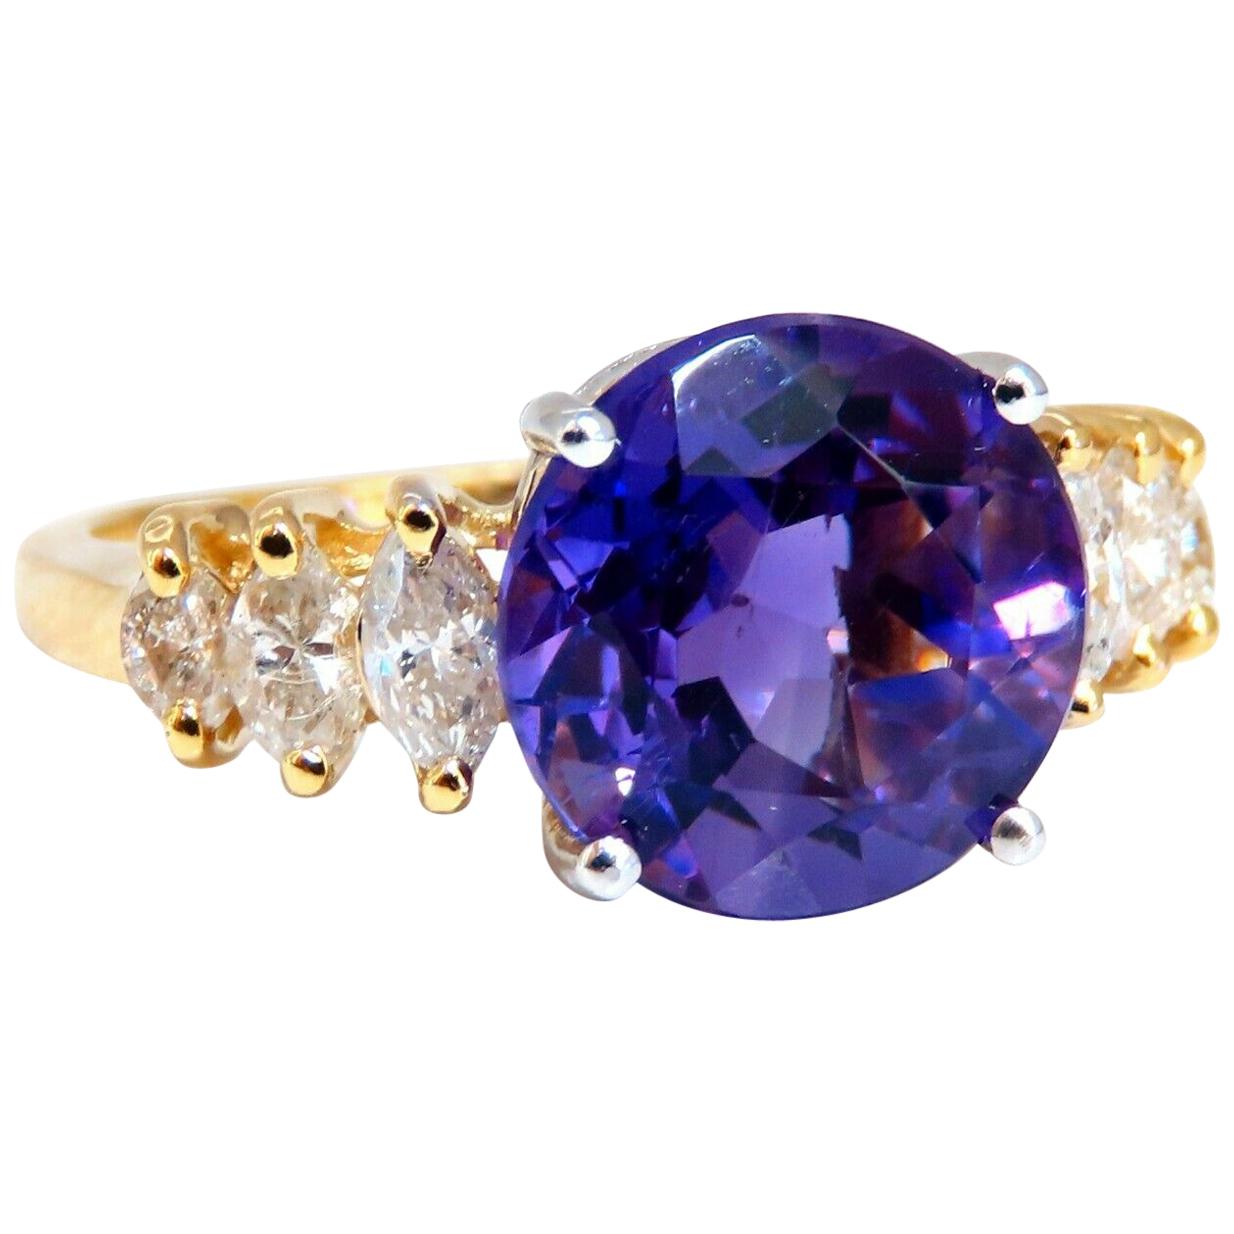 Bague en or 14 carats avec diamants et améthyste naturelle ronde violette vif de 4,45 carats